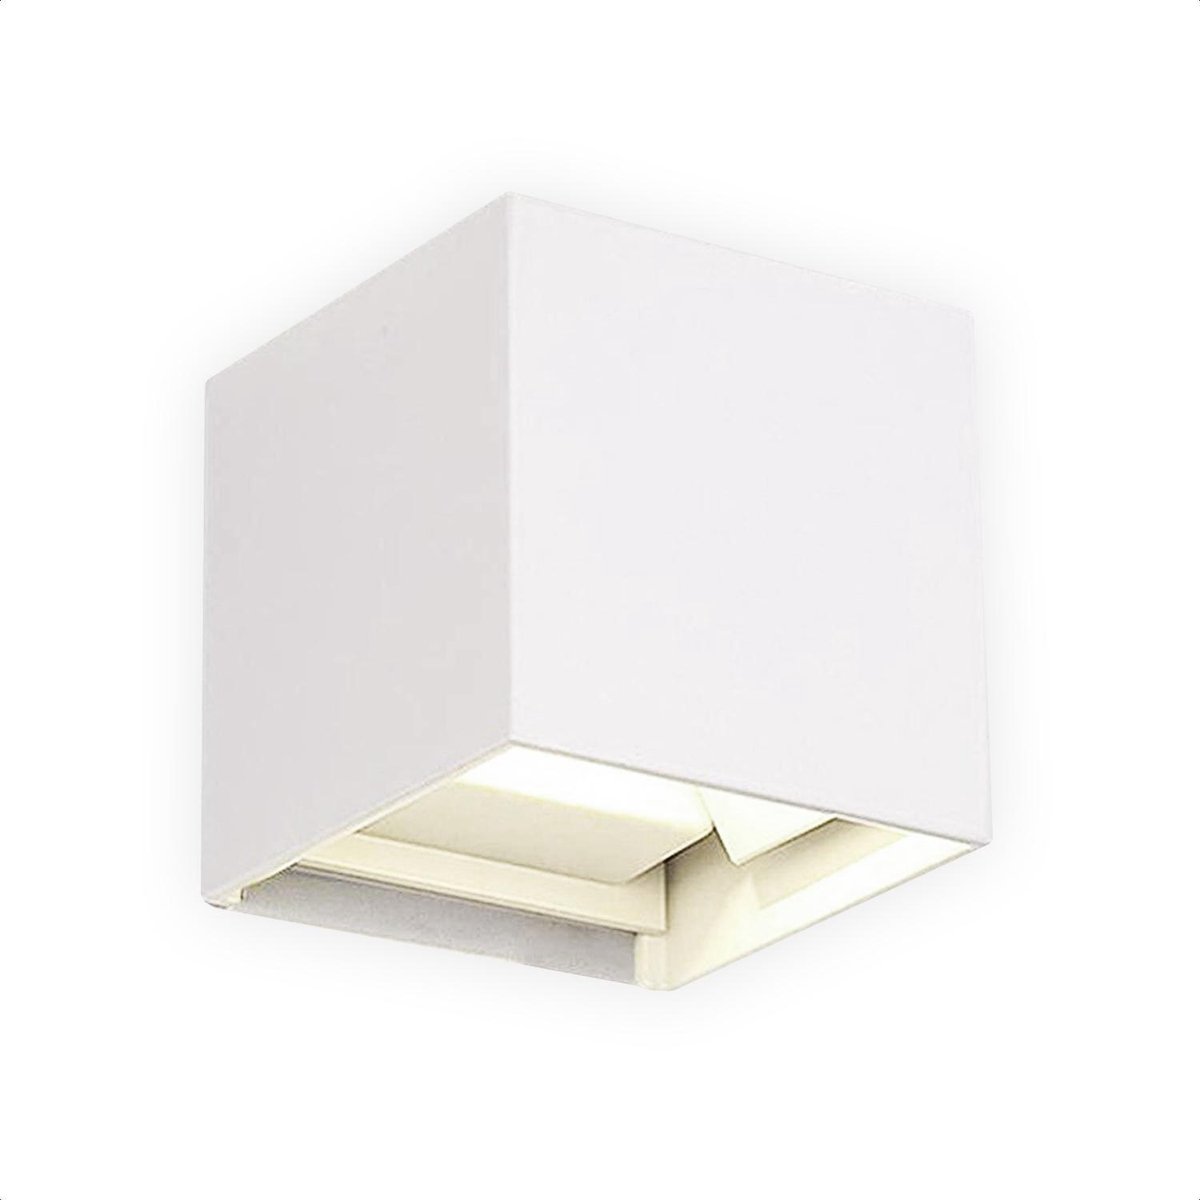 SensaHome Cube - Moderne LED Wandlamp voor Buiten en Binnen - Design Buitenverlichting - IP65 Waterdicht - Koud Wit (4500K) - Wit